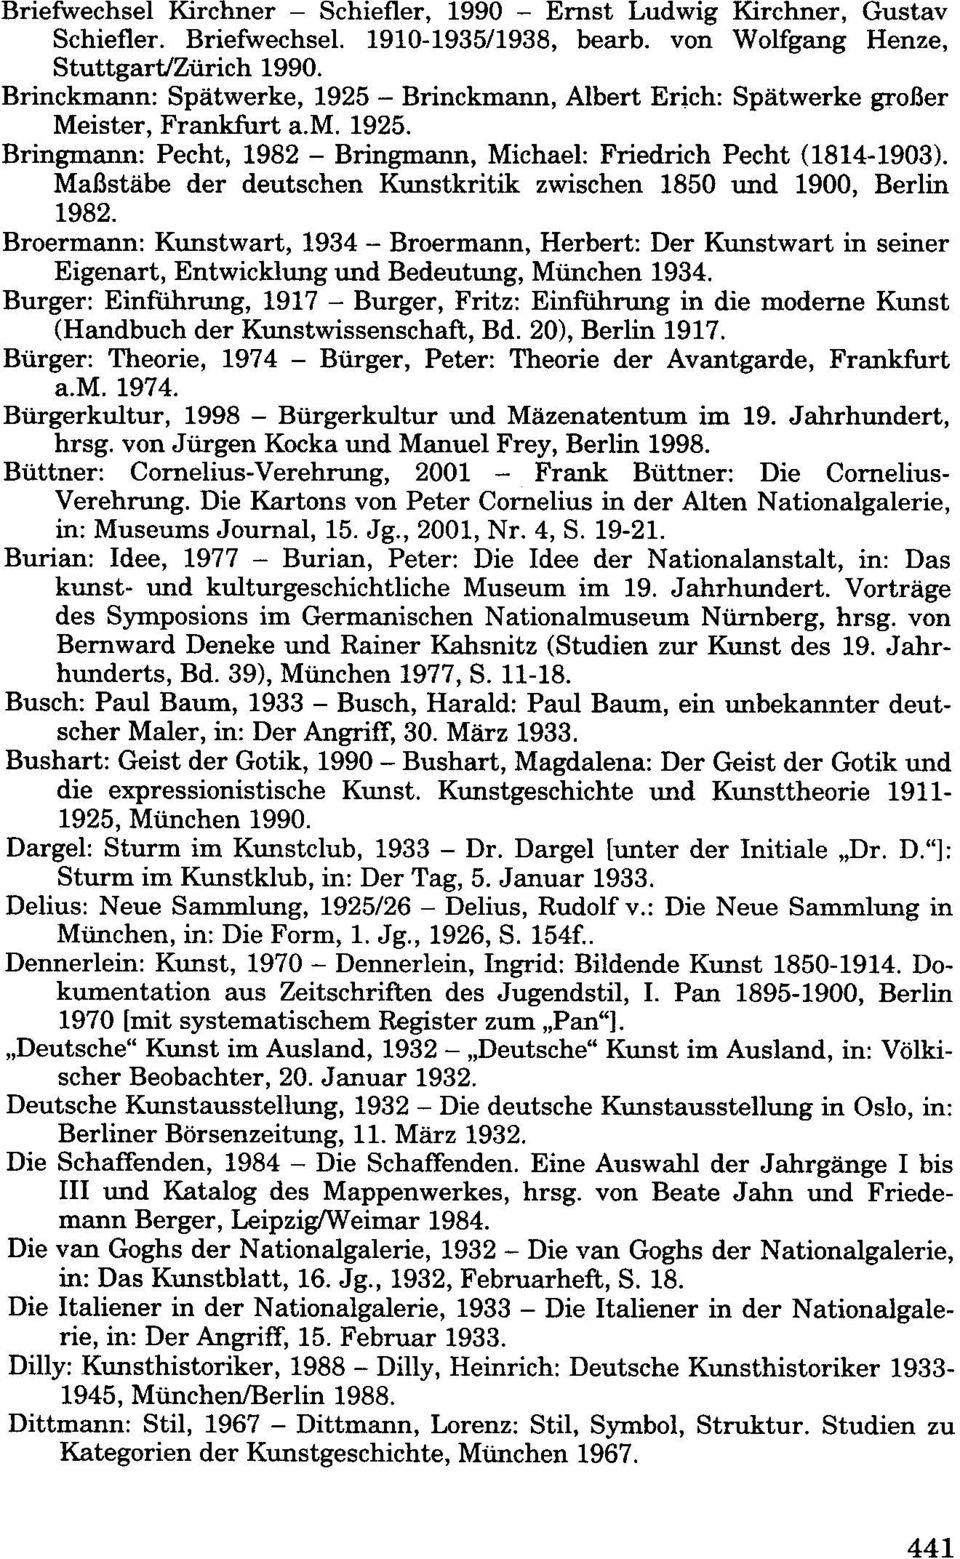 Maßstäbe der deutschen Kunstkritik zwischen 1850 und 1900, Berlin 1982. Broermann: Kunstwart, 1934 - Broermann, Herbert: Der Kunstwart in seiner Eigenart, Entwicklung und Bedeutung, München 1934.